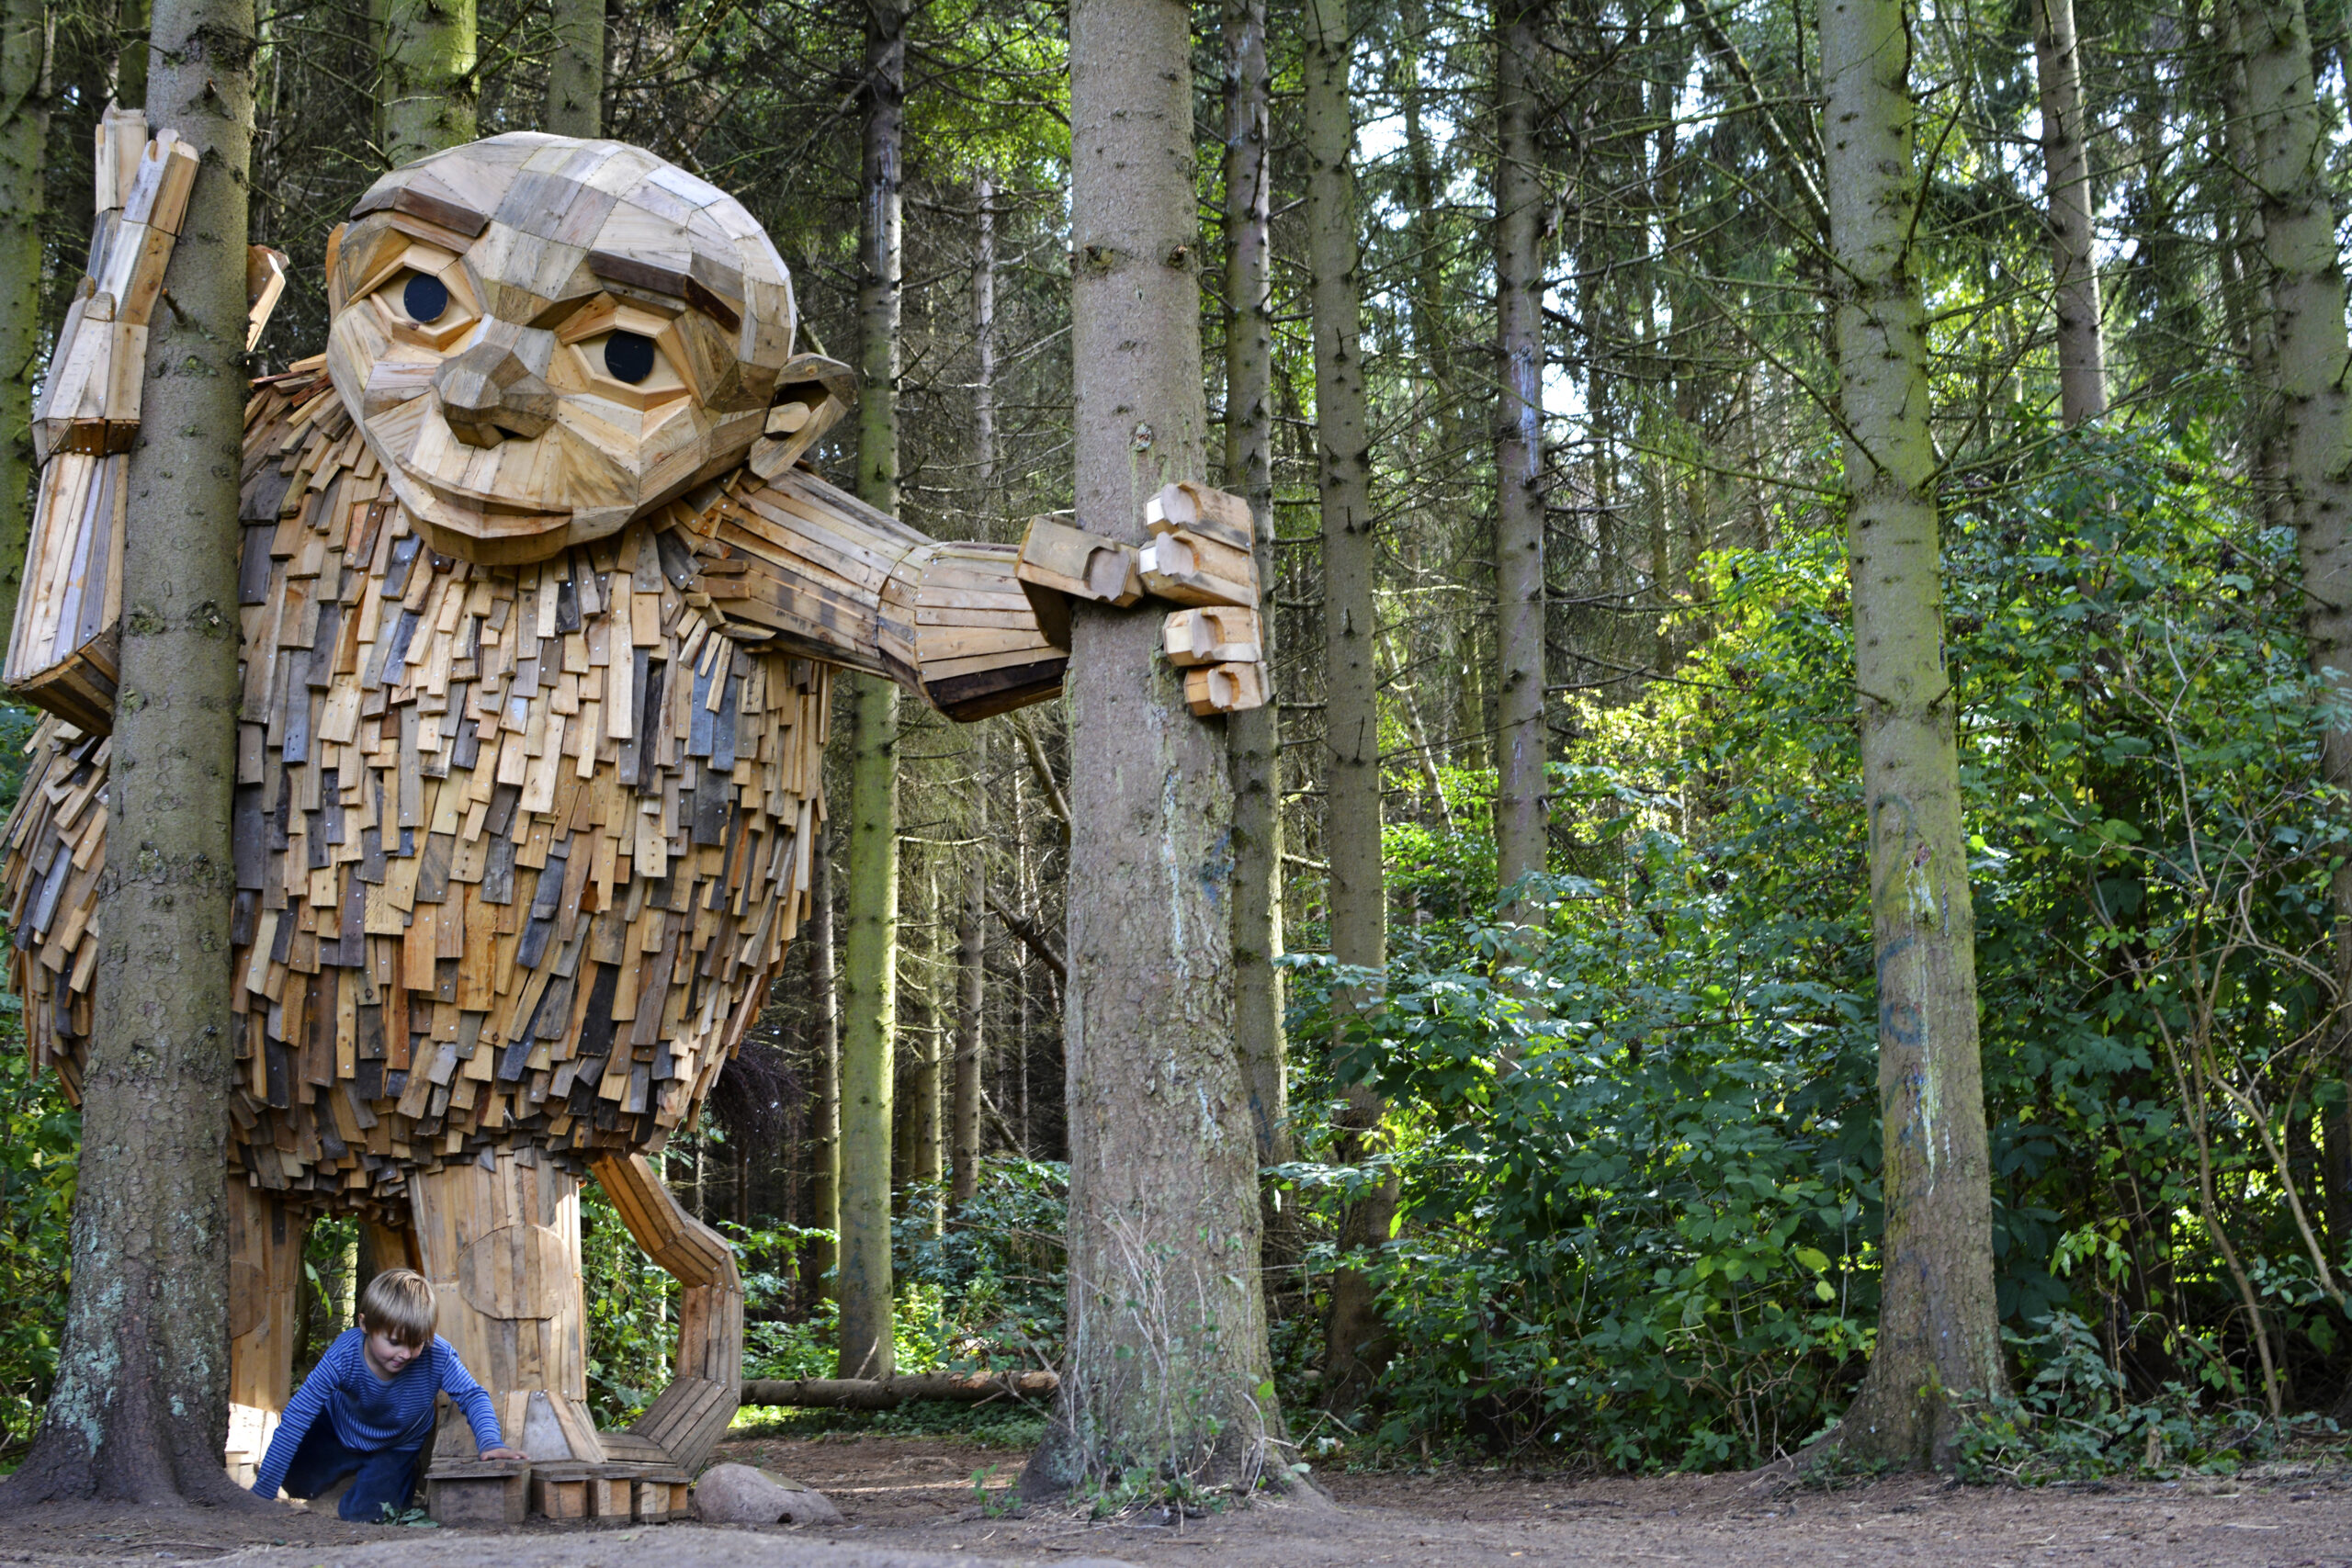 Giant wooden troll sculpture coming to Ballard this summer – My Ballard